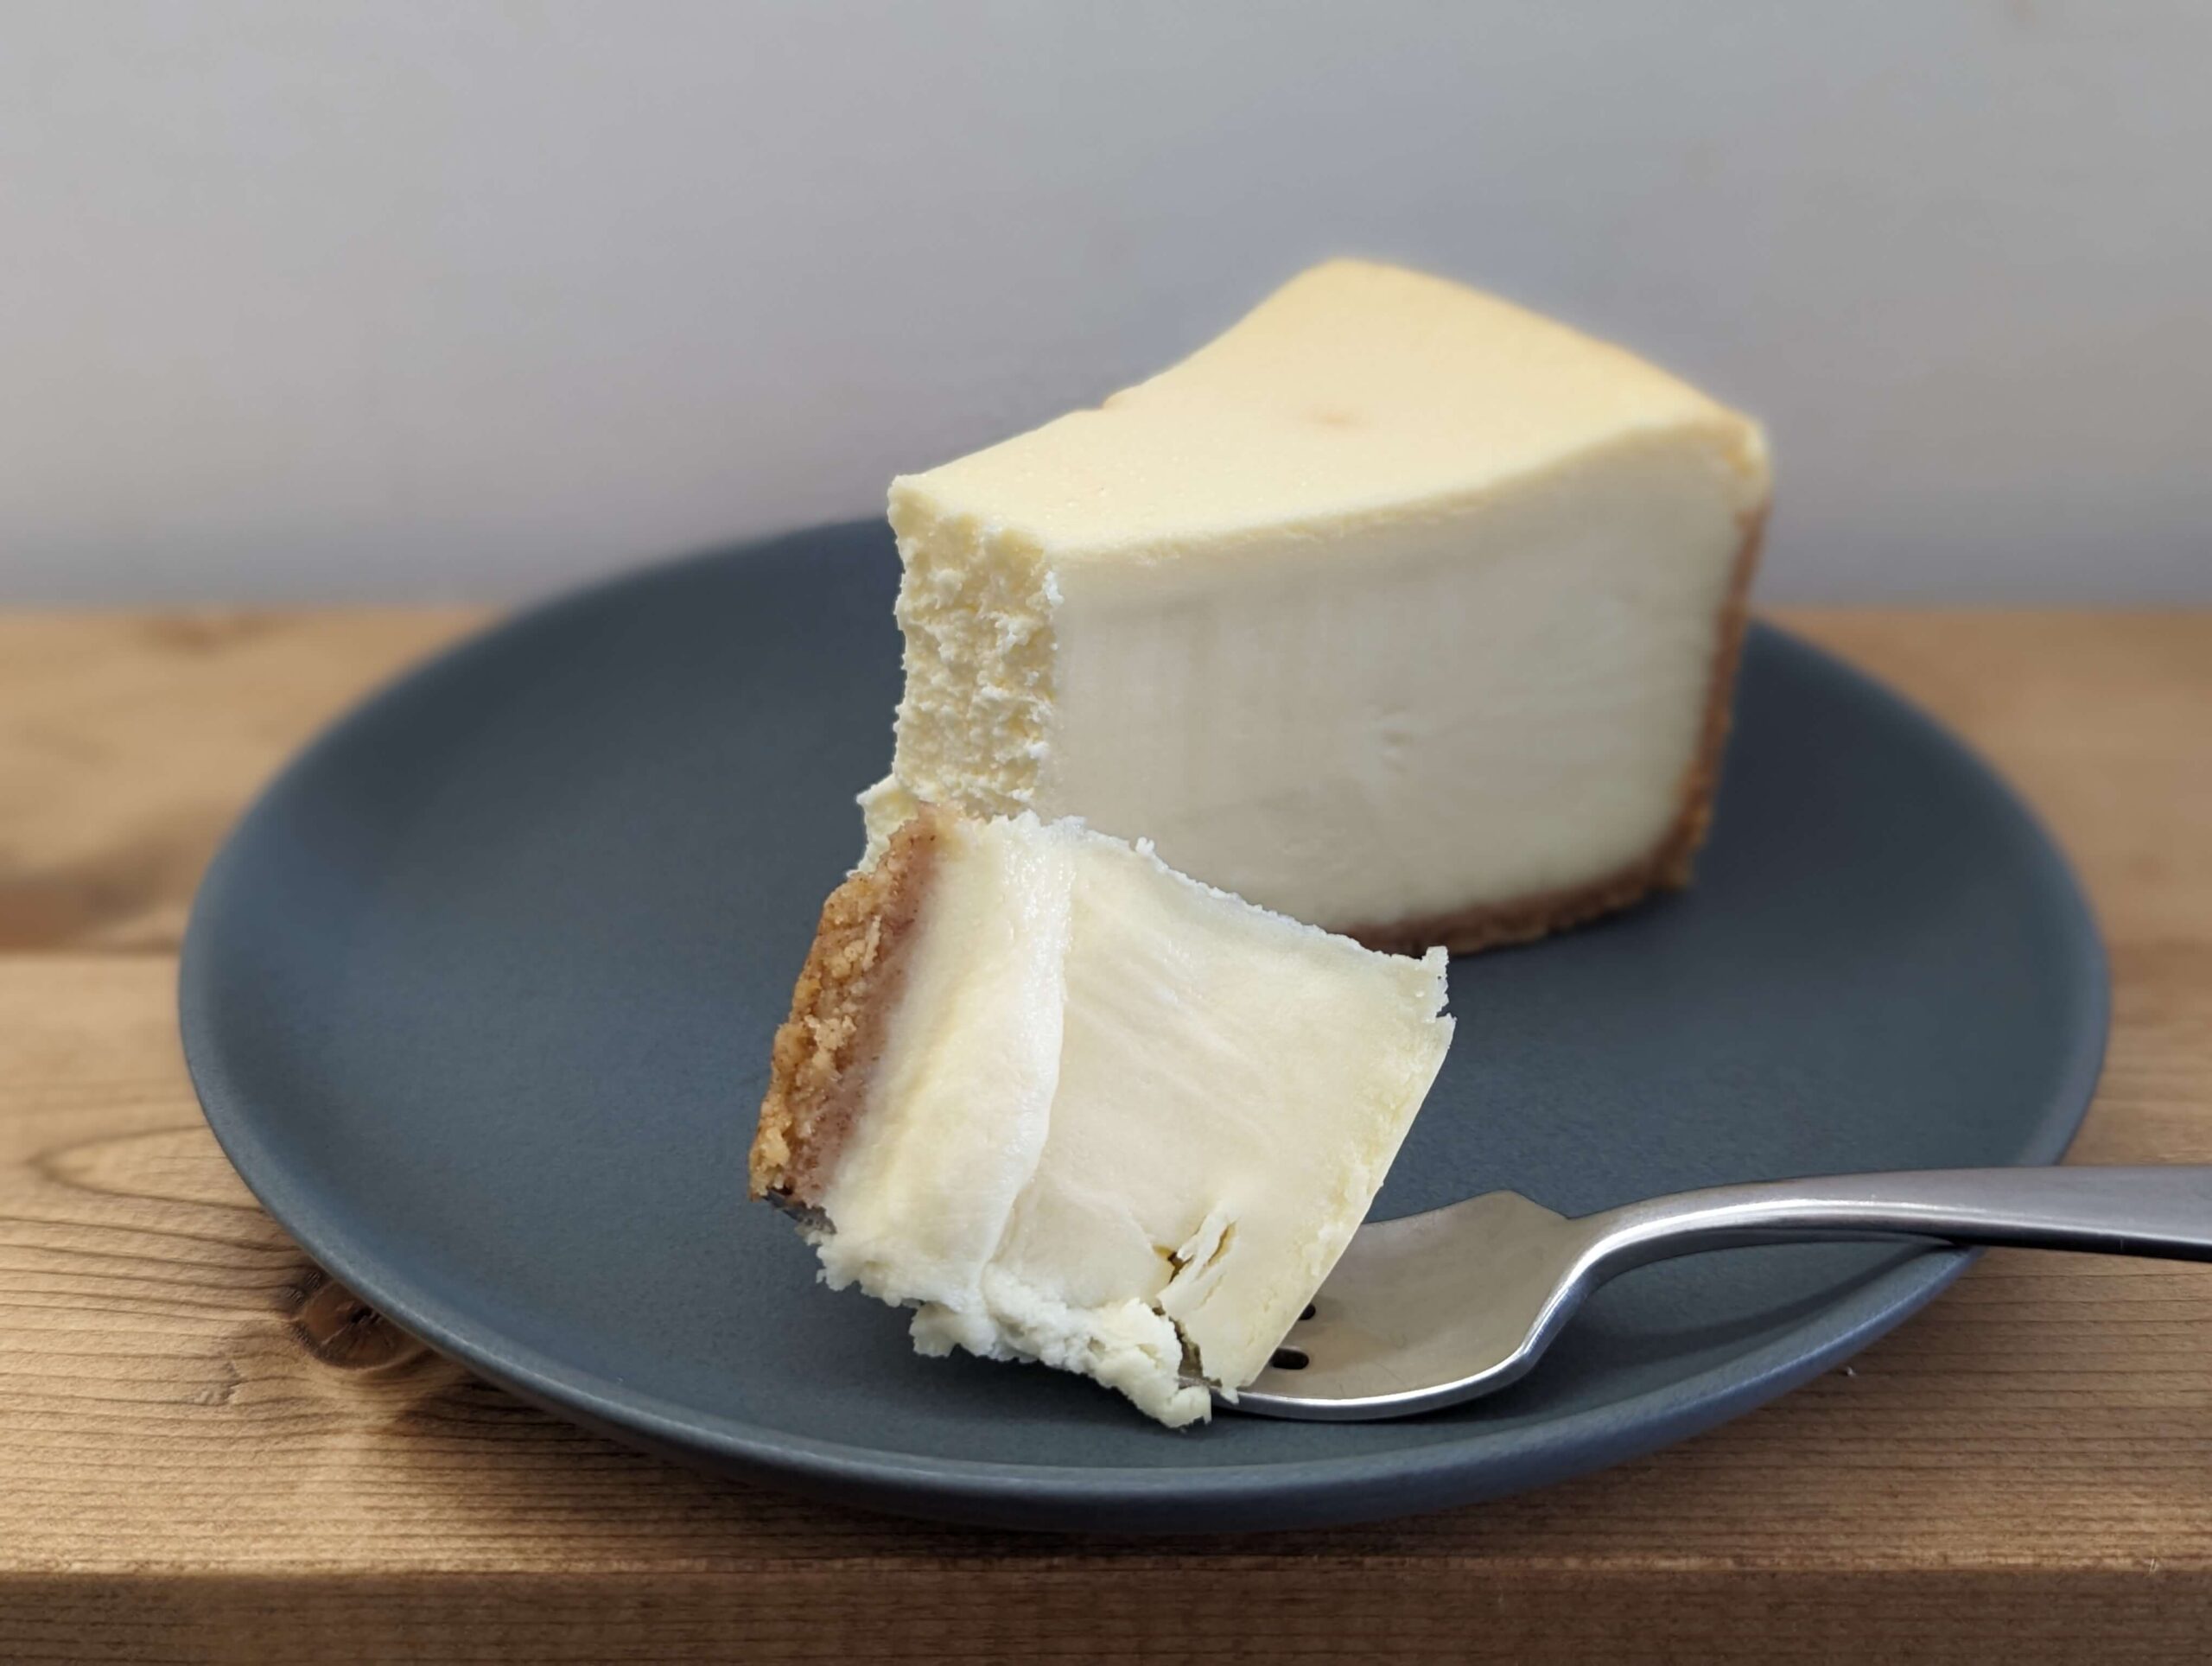 コストコ(COSTCO)のTHE CHEESECAKE FACTORY オリジナルチーズケーキ (22)